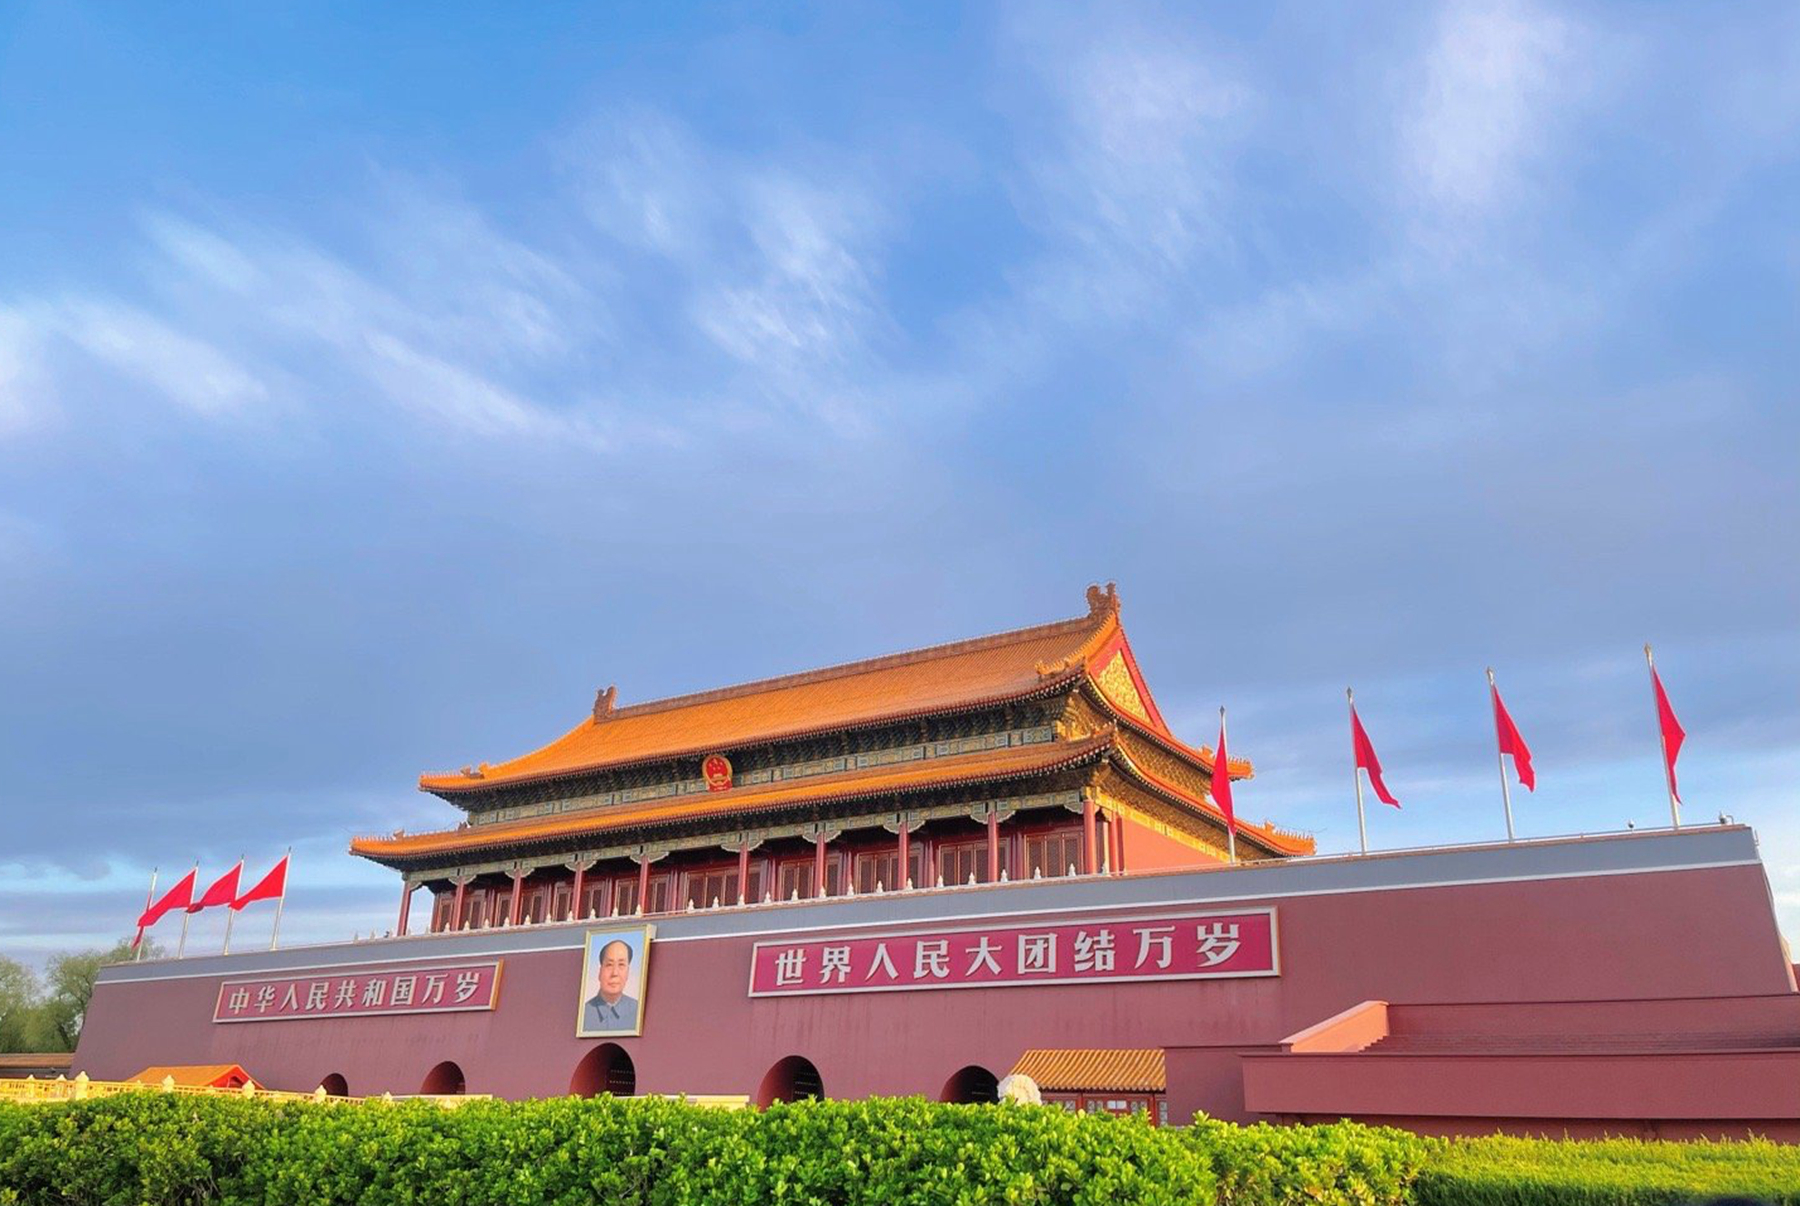 北京天安门广场中心花坛正式亮相 - 滚动 - 华声新闻 - 华声在线